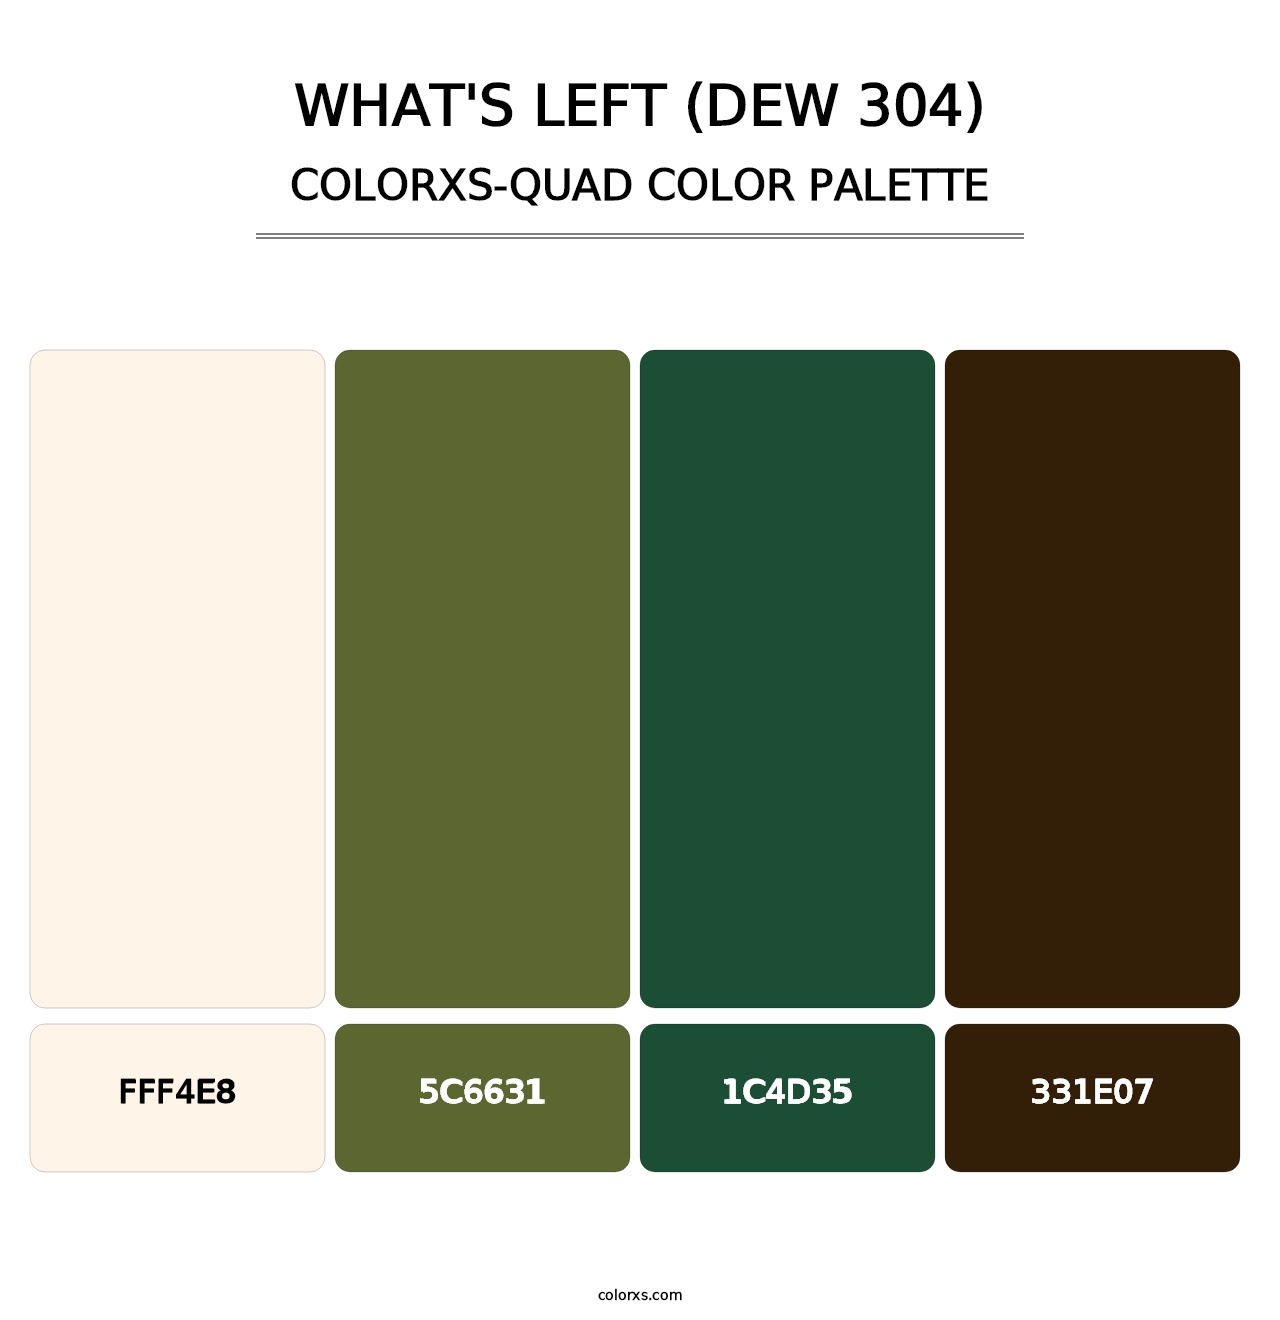 What's Left (DEW 304) - Colorxs Quad Palette